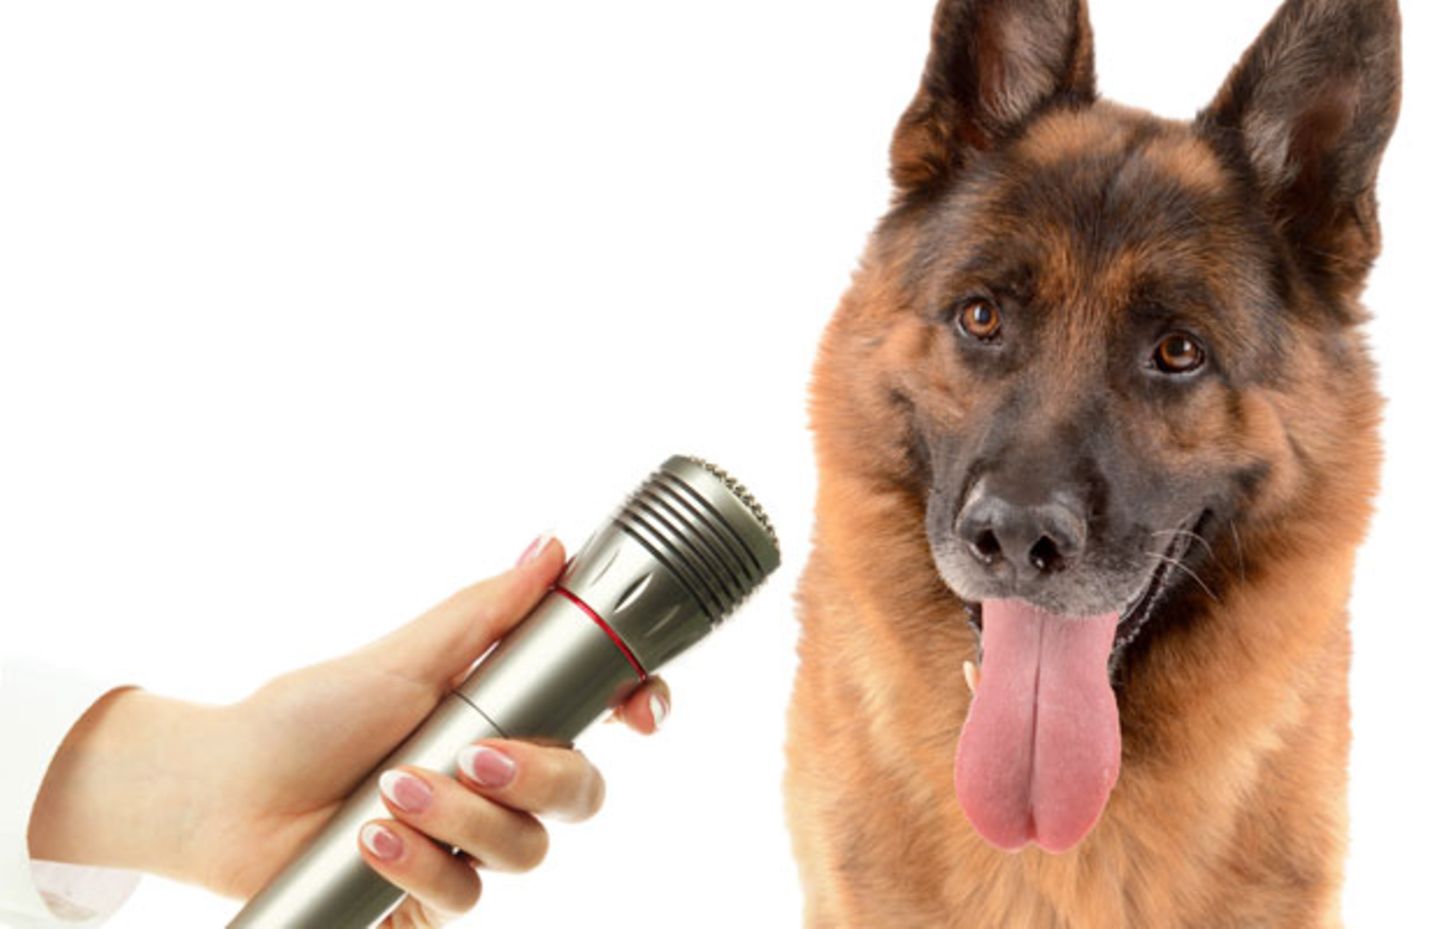 Gehorcht auf Wort: Ein Polizeihund macht Aussage